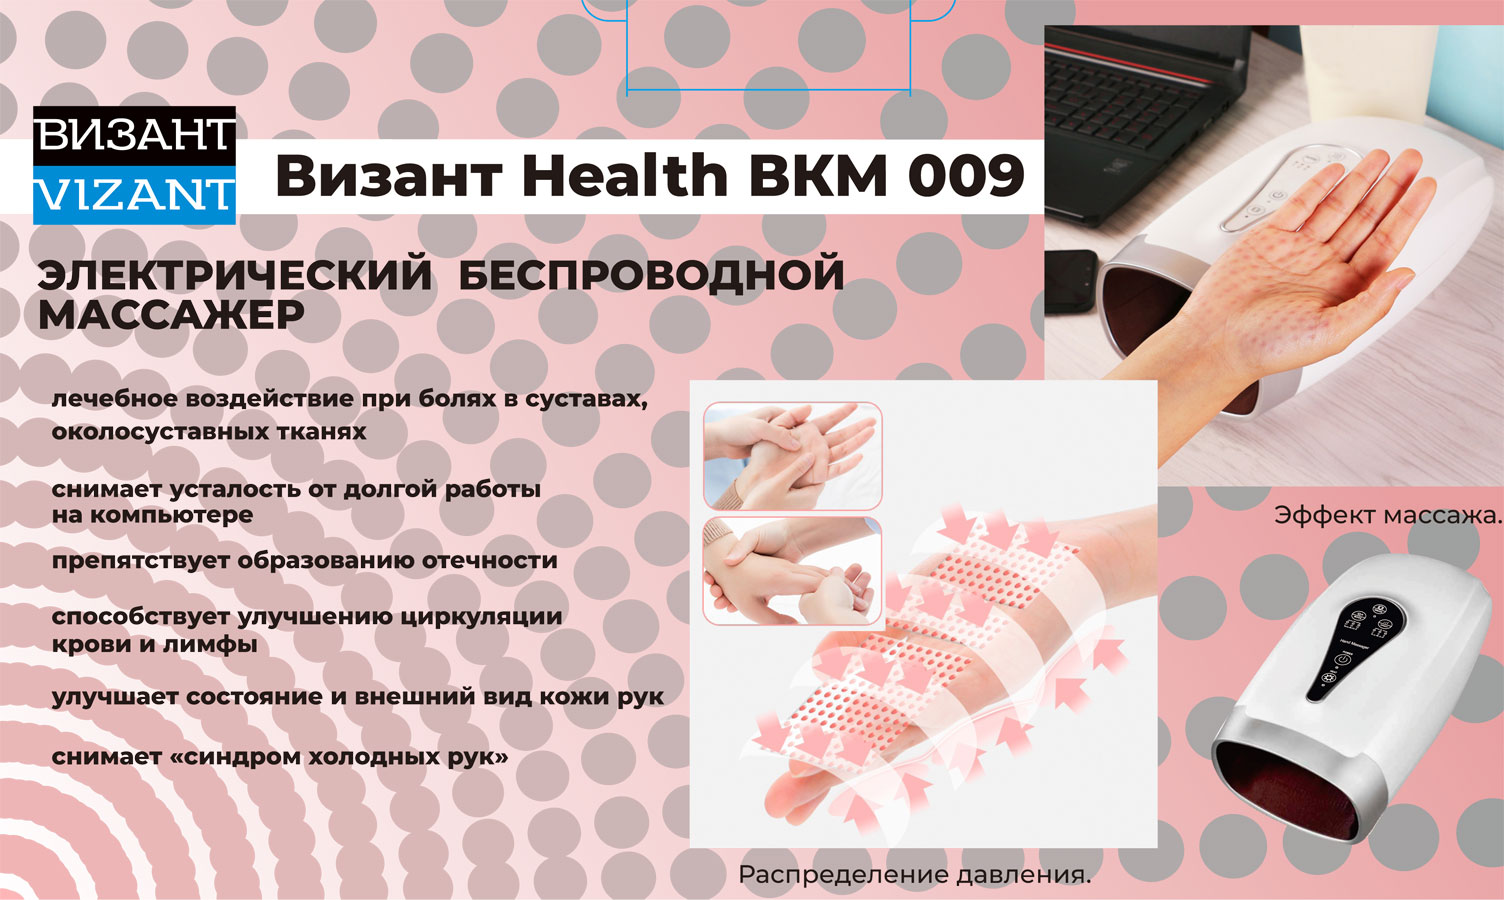    Vizant HEALTH BKM 009  